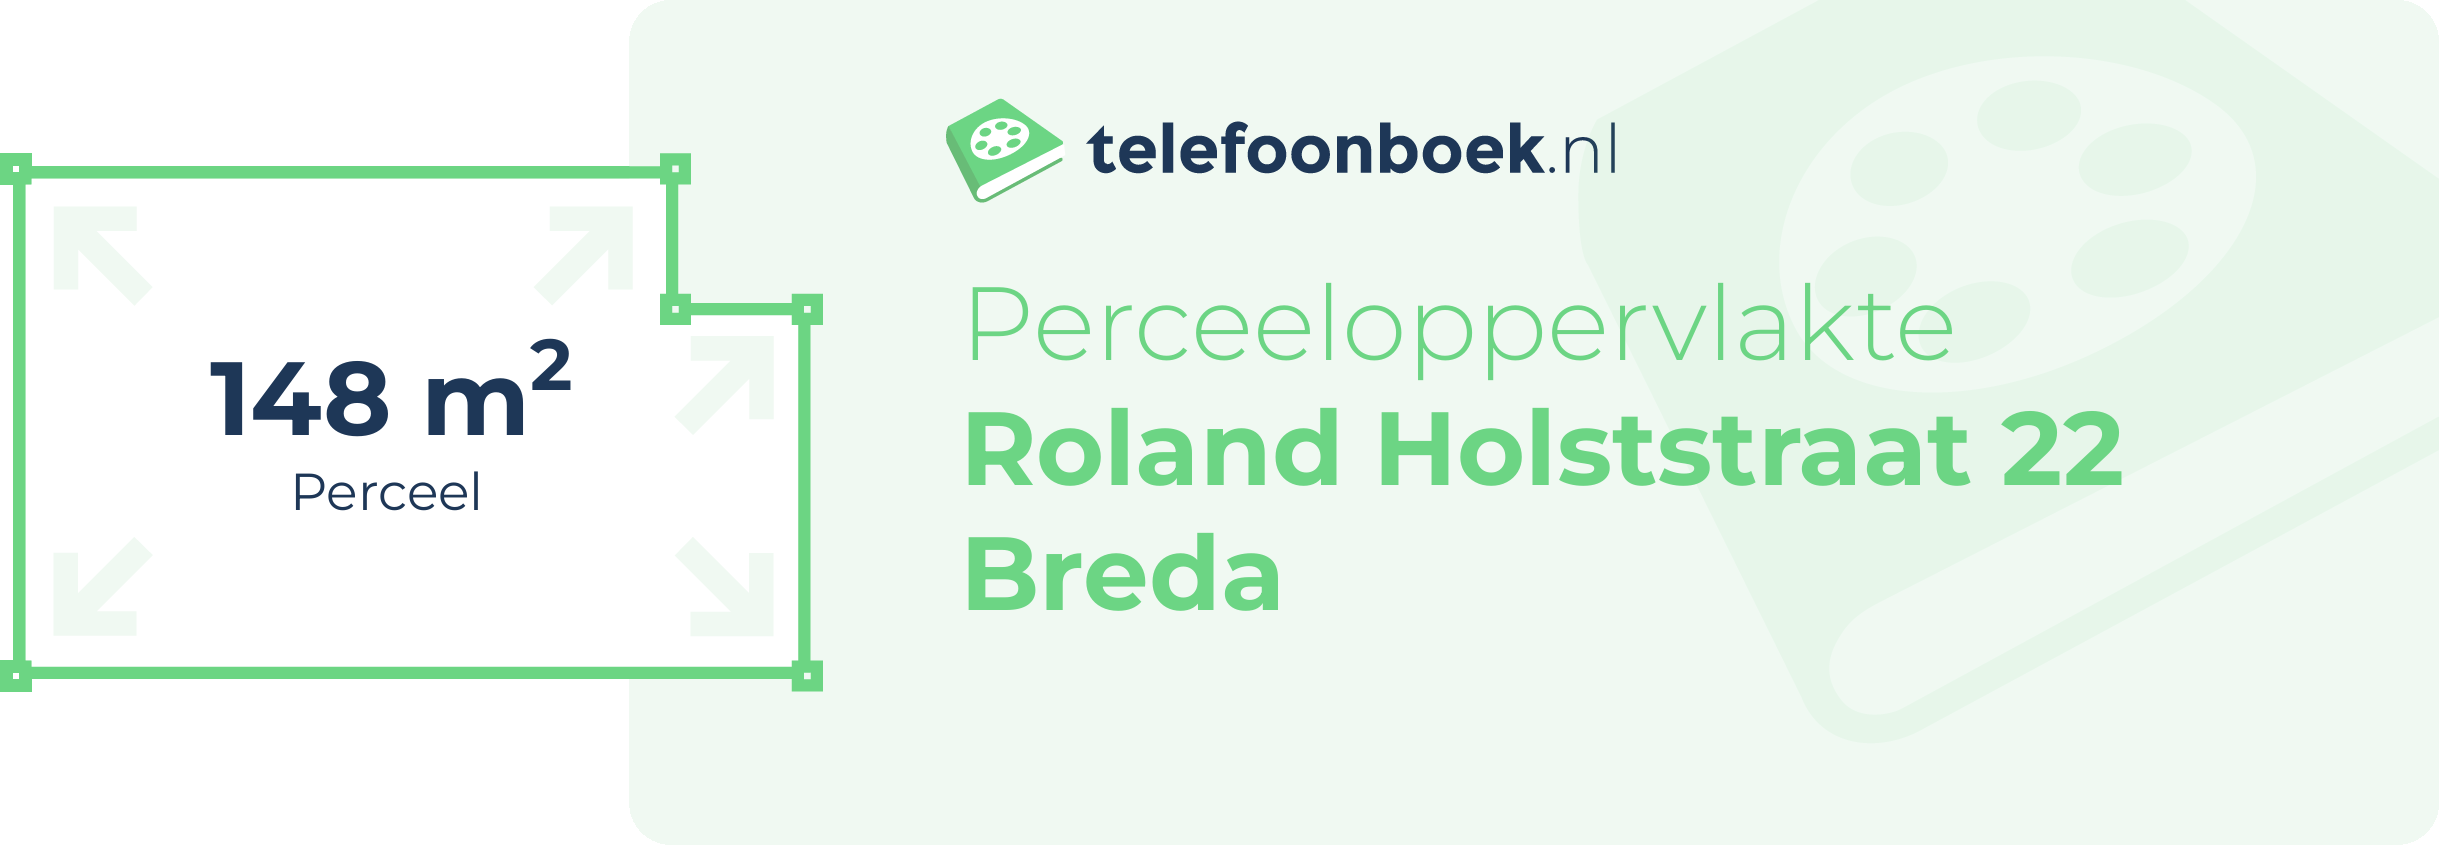 Perceeloppervlakte Roland Holststraat 22 Breda